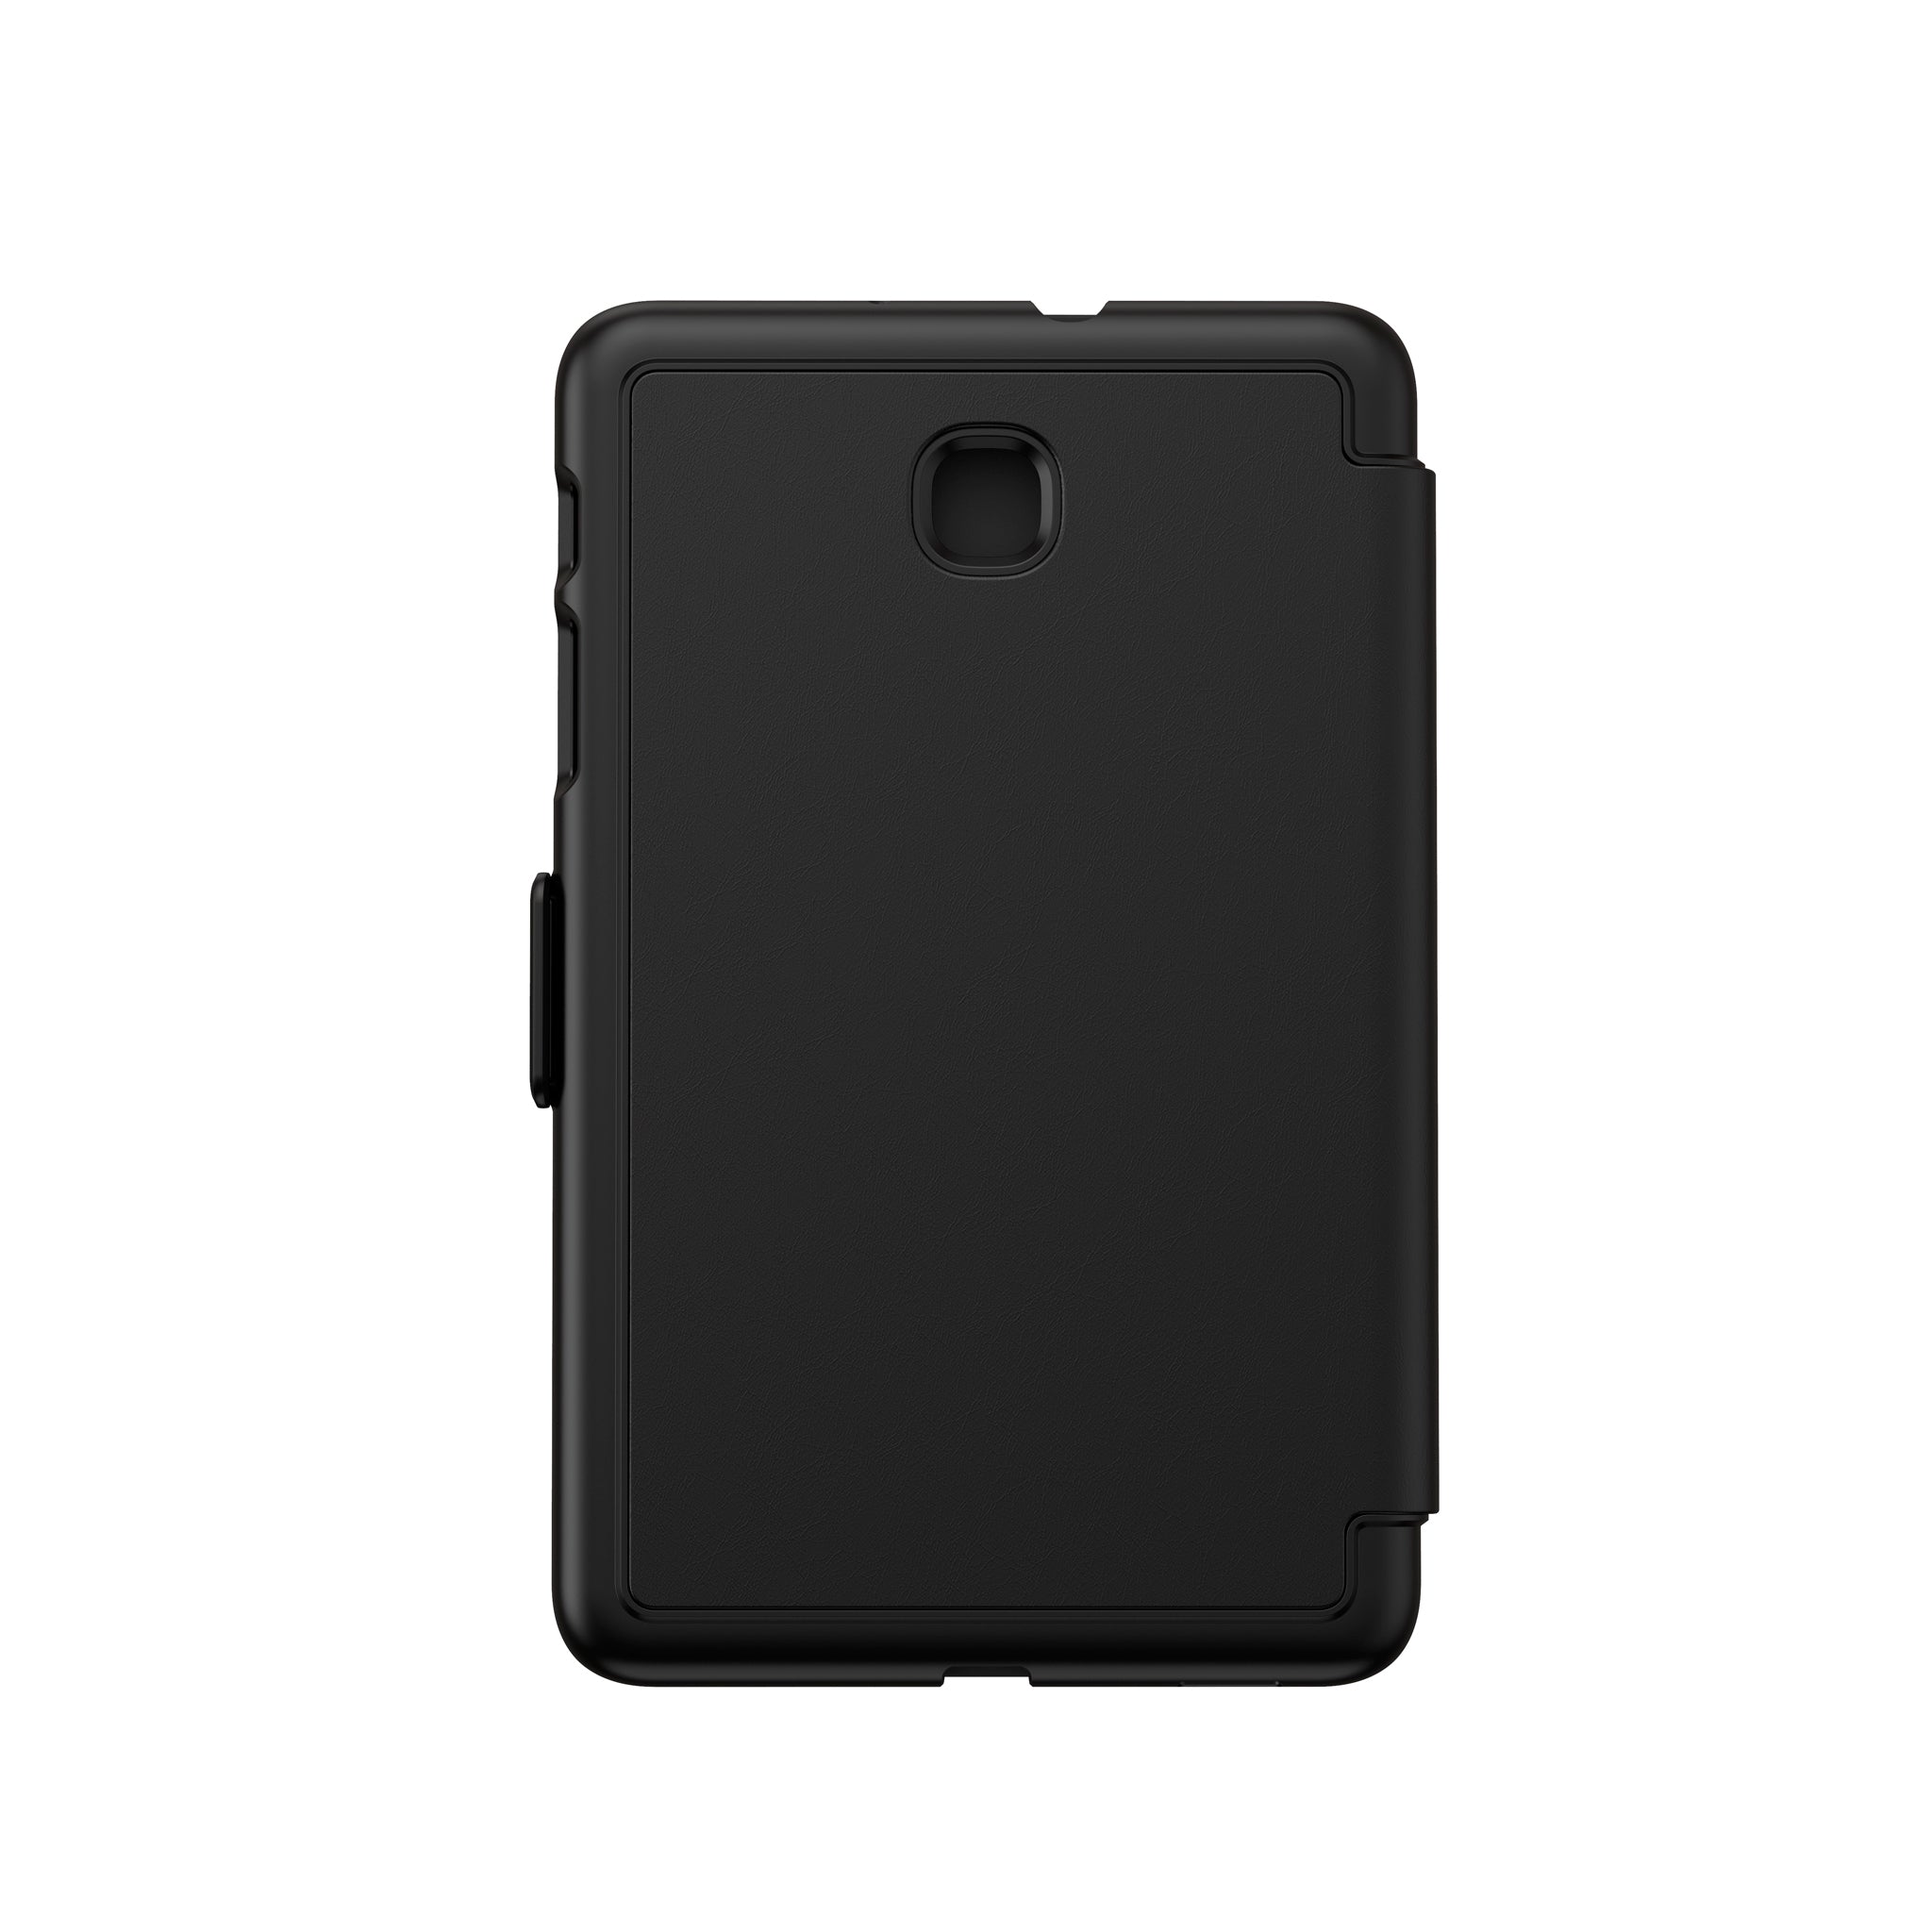 Speck - Balance Folio For Samsung Galaxy Tab A 8.0 2018 - Black